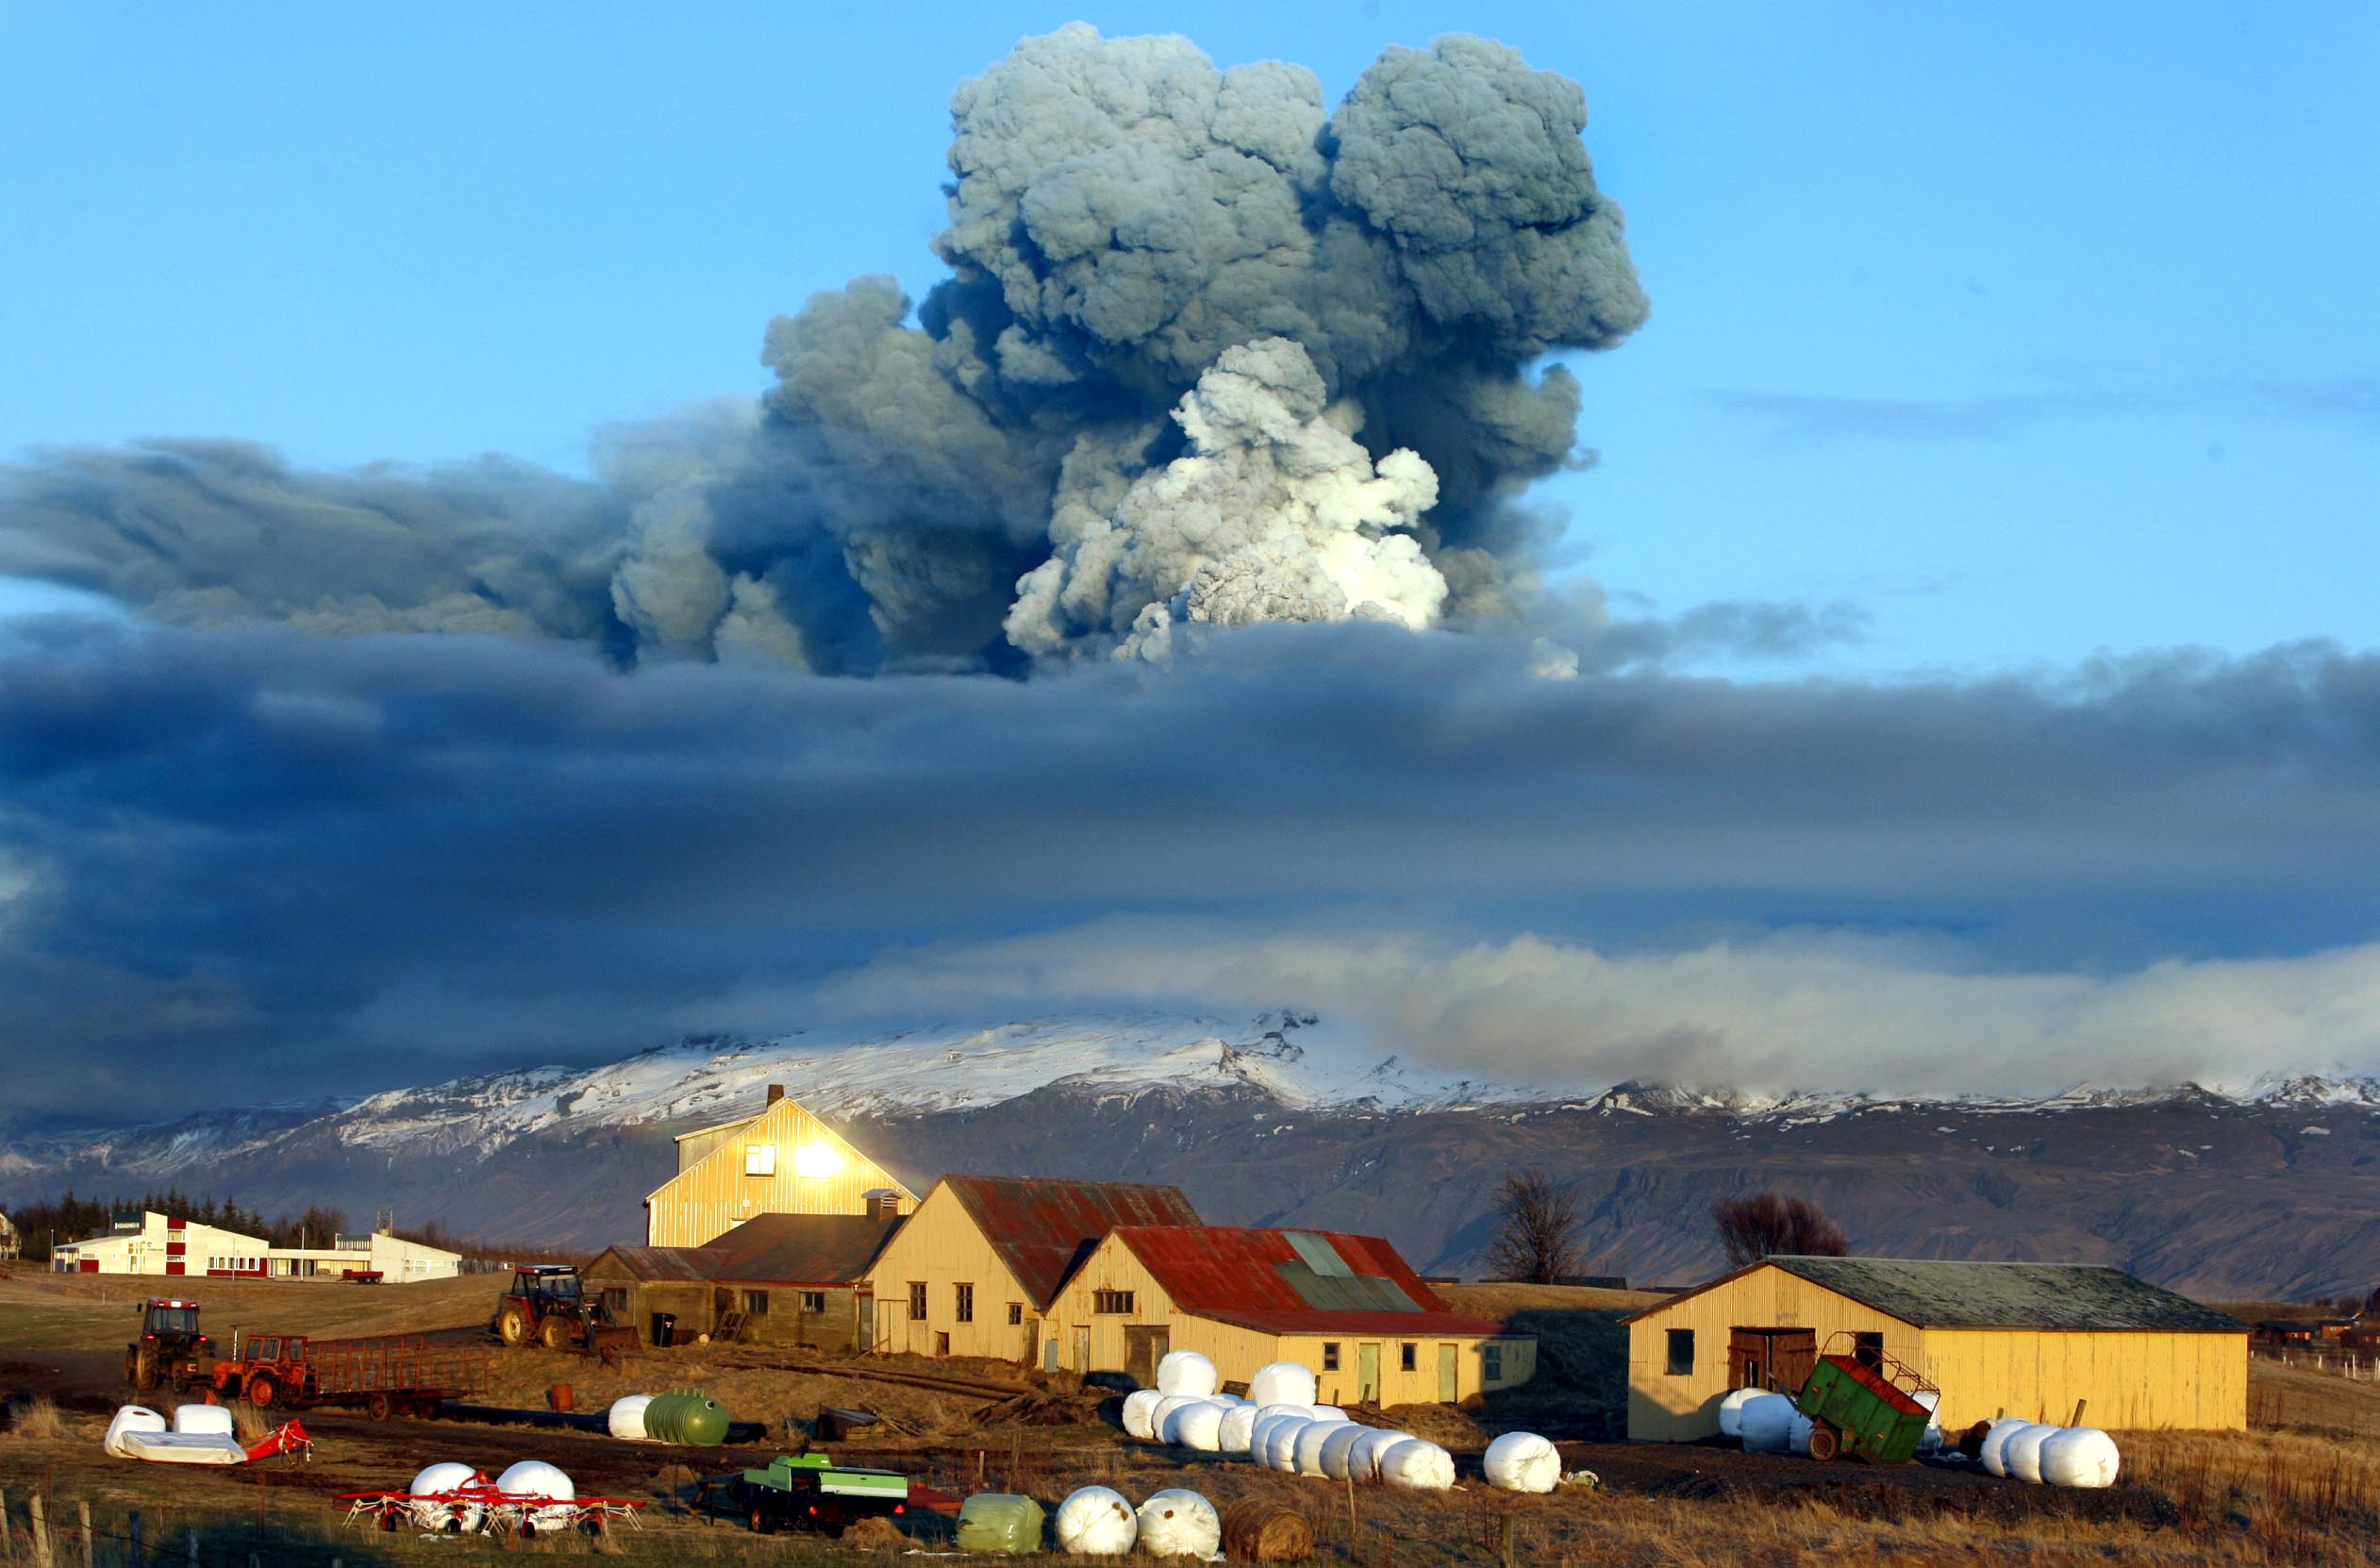 16/4/2010. Askan väller ut ur isländska vulkanen Eyjafjallajökull. Flygkaos uppstår. Vissa talar om att askmolnet som bildas kan ligga kvar i många tiotals år. Så blir det dock inte.